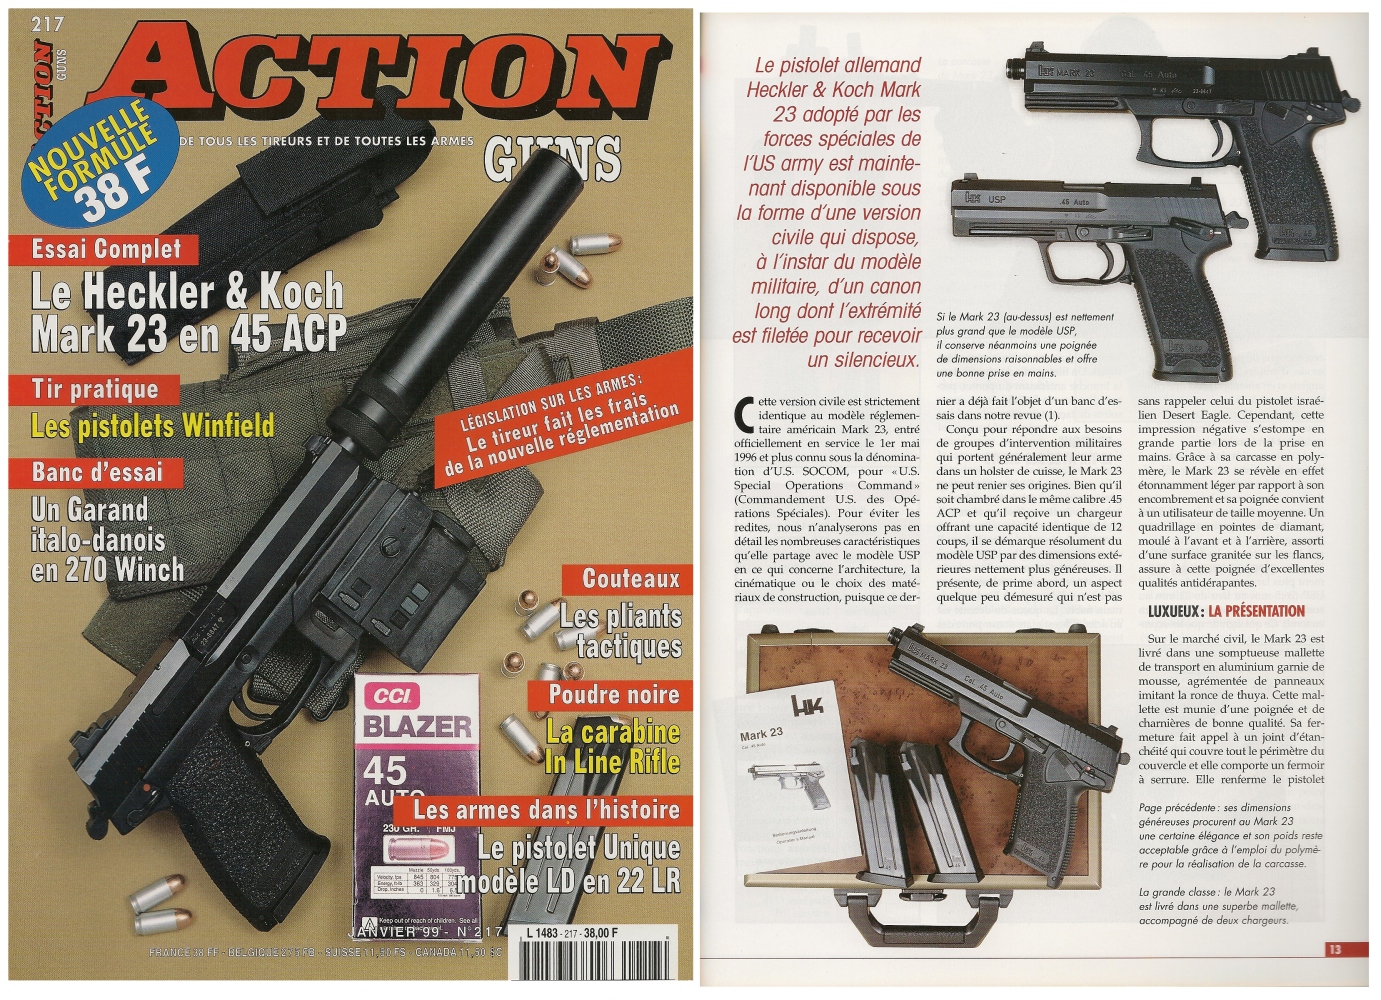 Le banc d'essai du pistolet HK Mark 23 SOCOM a été publié sur 7 pages dans le magazine Action Guns n° 217 (janvier 1999).